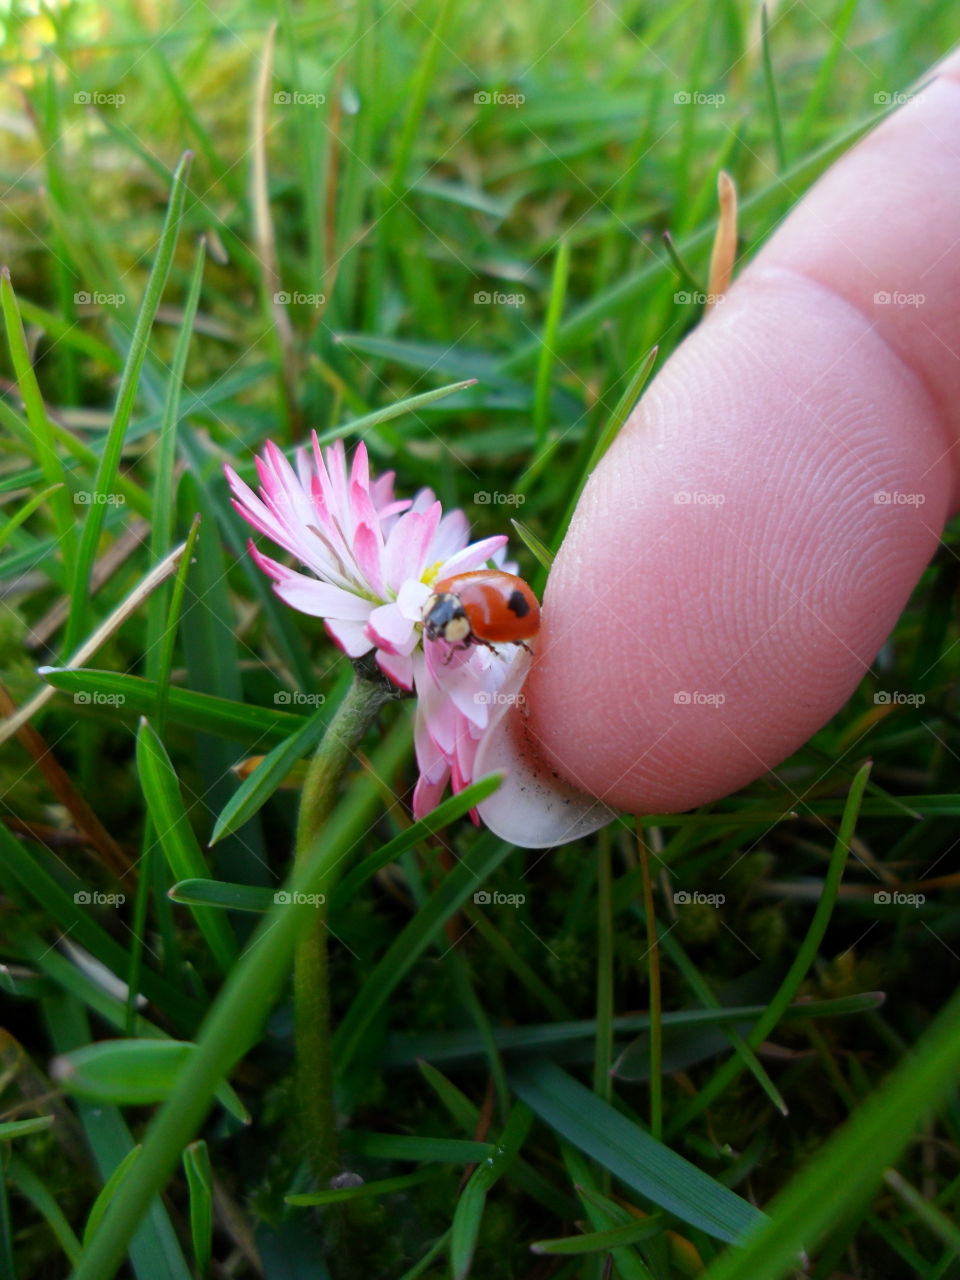 Ladybug on flower 